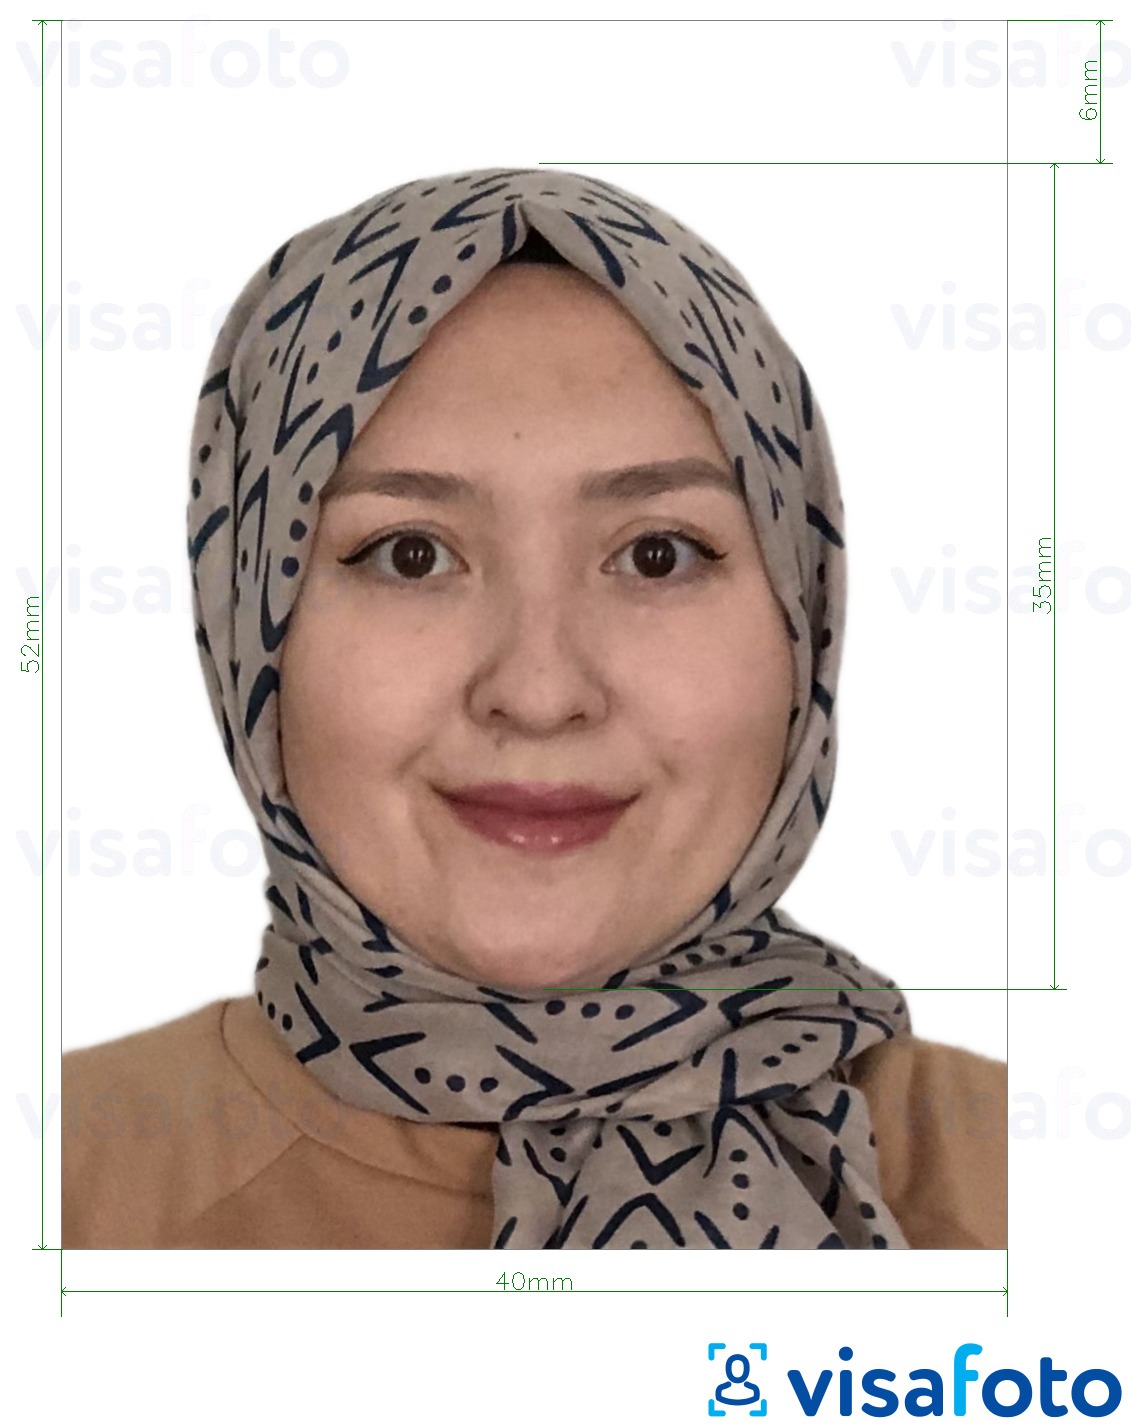 Exemplo de foto para Passaporte de Brunei 5,2x4 cm (52x40 mm) com especificação exata de dimensão